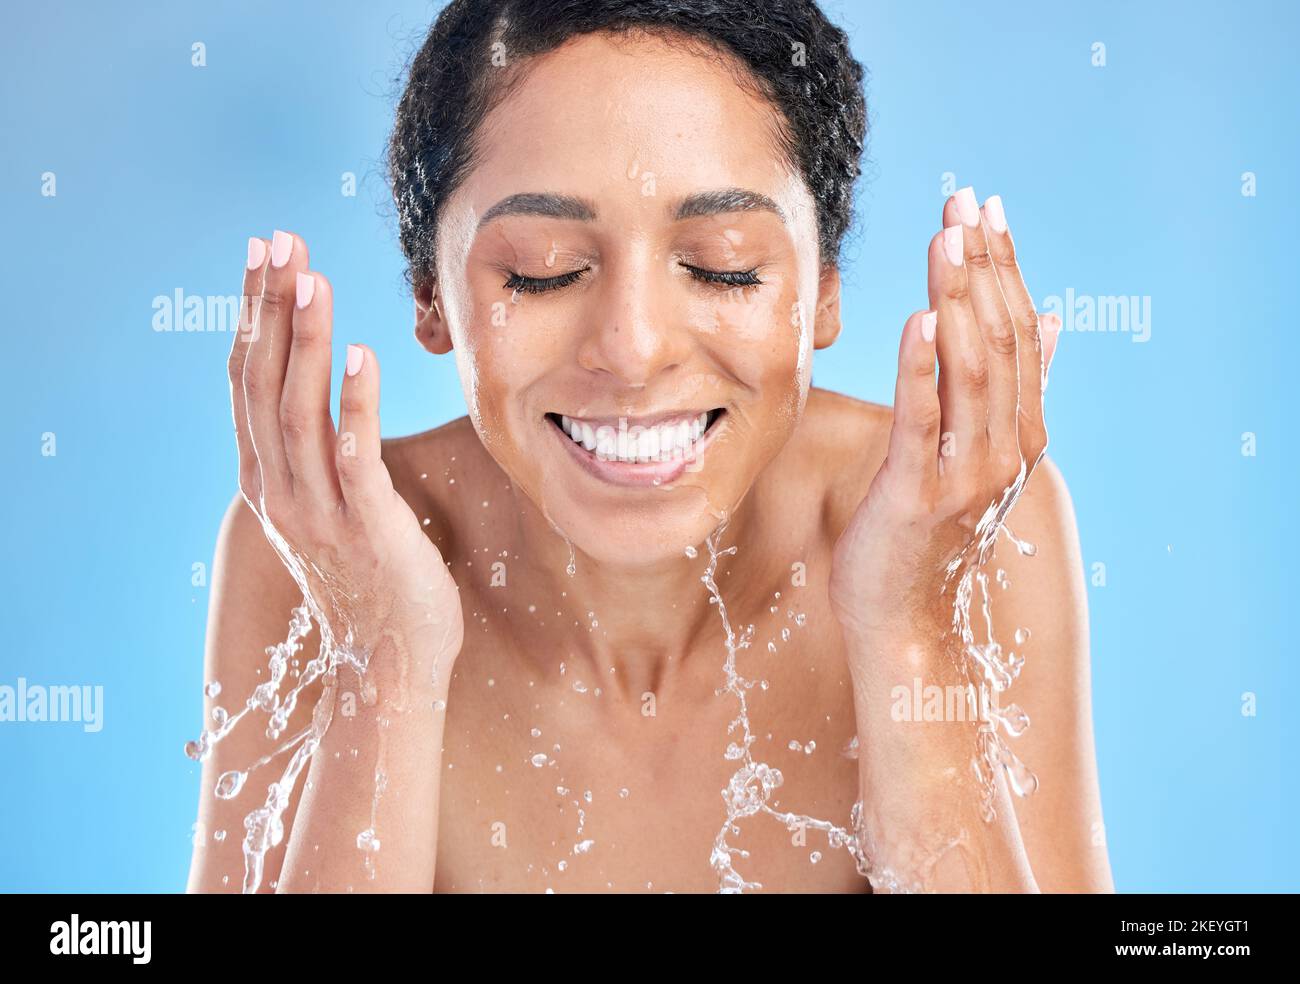 Wasser Spritzer schwarze Frau Gesicht auf blauem Hintergrund für Gesundheit, Schönheit und Hautpflege morgendliche Routine zu reinigen. Hautpflege, Luxuskosmetik und glückliche Frau Stockfoto